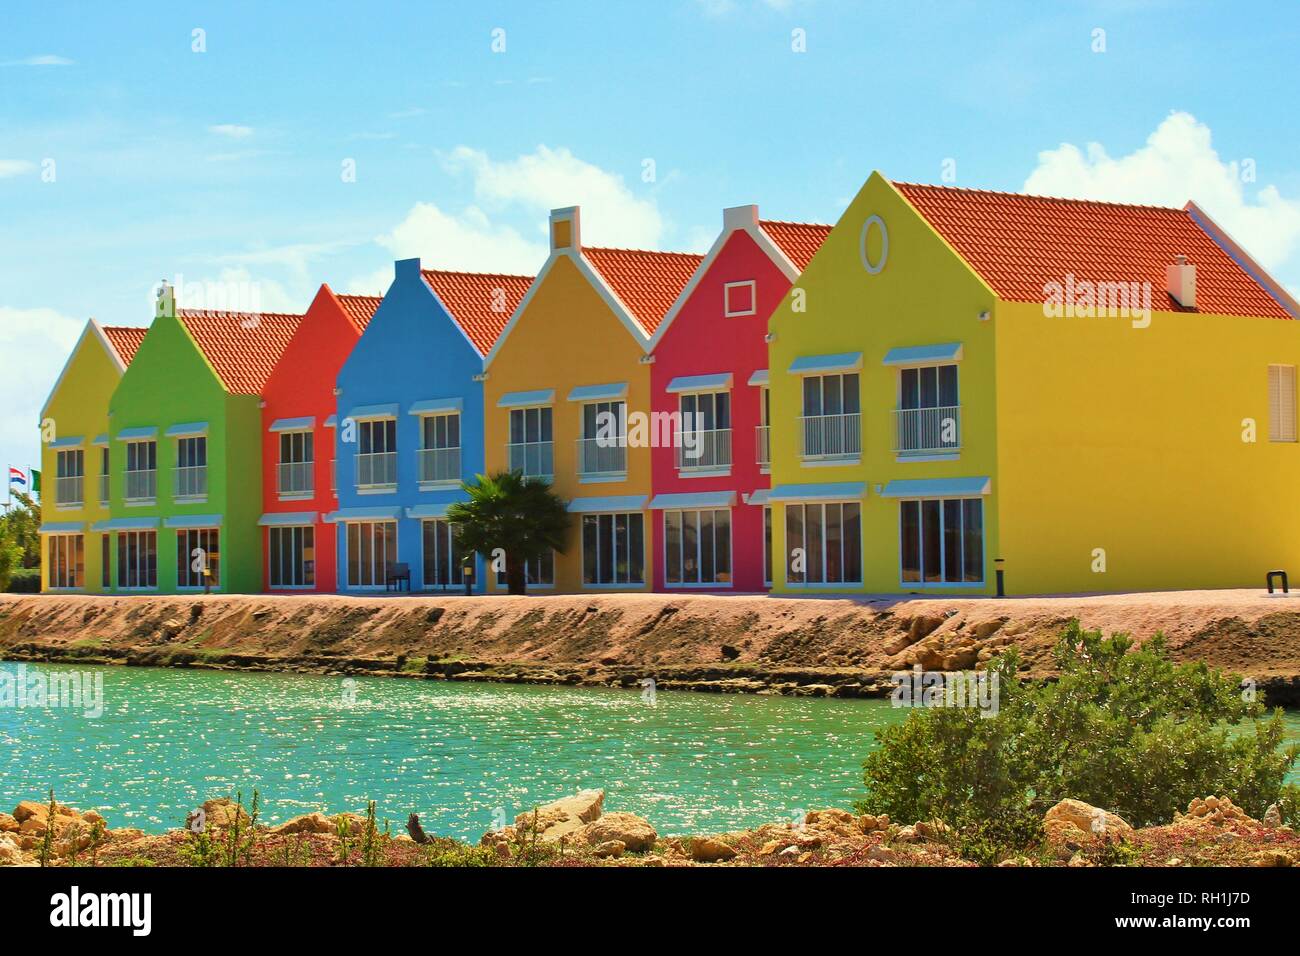 Kralendijk, Bonaire, dei Caraibi - 22 Febbraio 2018: il colorato, recentemente costruito villaggio cortile alloggi turistici complessi. Foto Stock